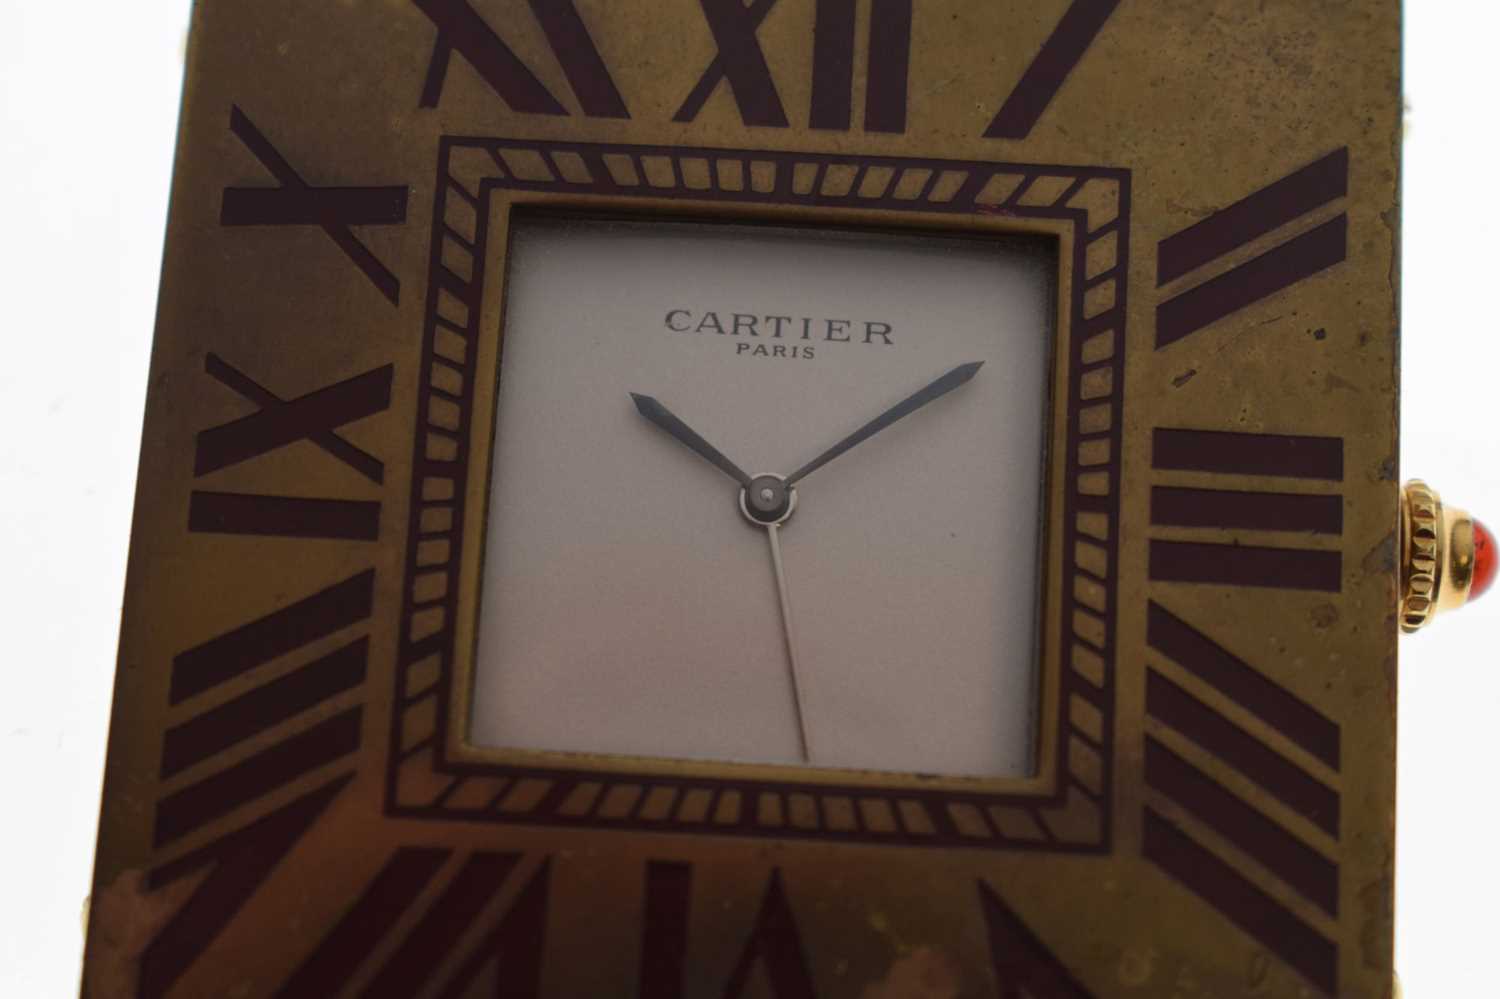 Cartier - Pendulettes De Voyage quartz travel timepiece - Image 8 of 8